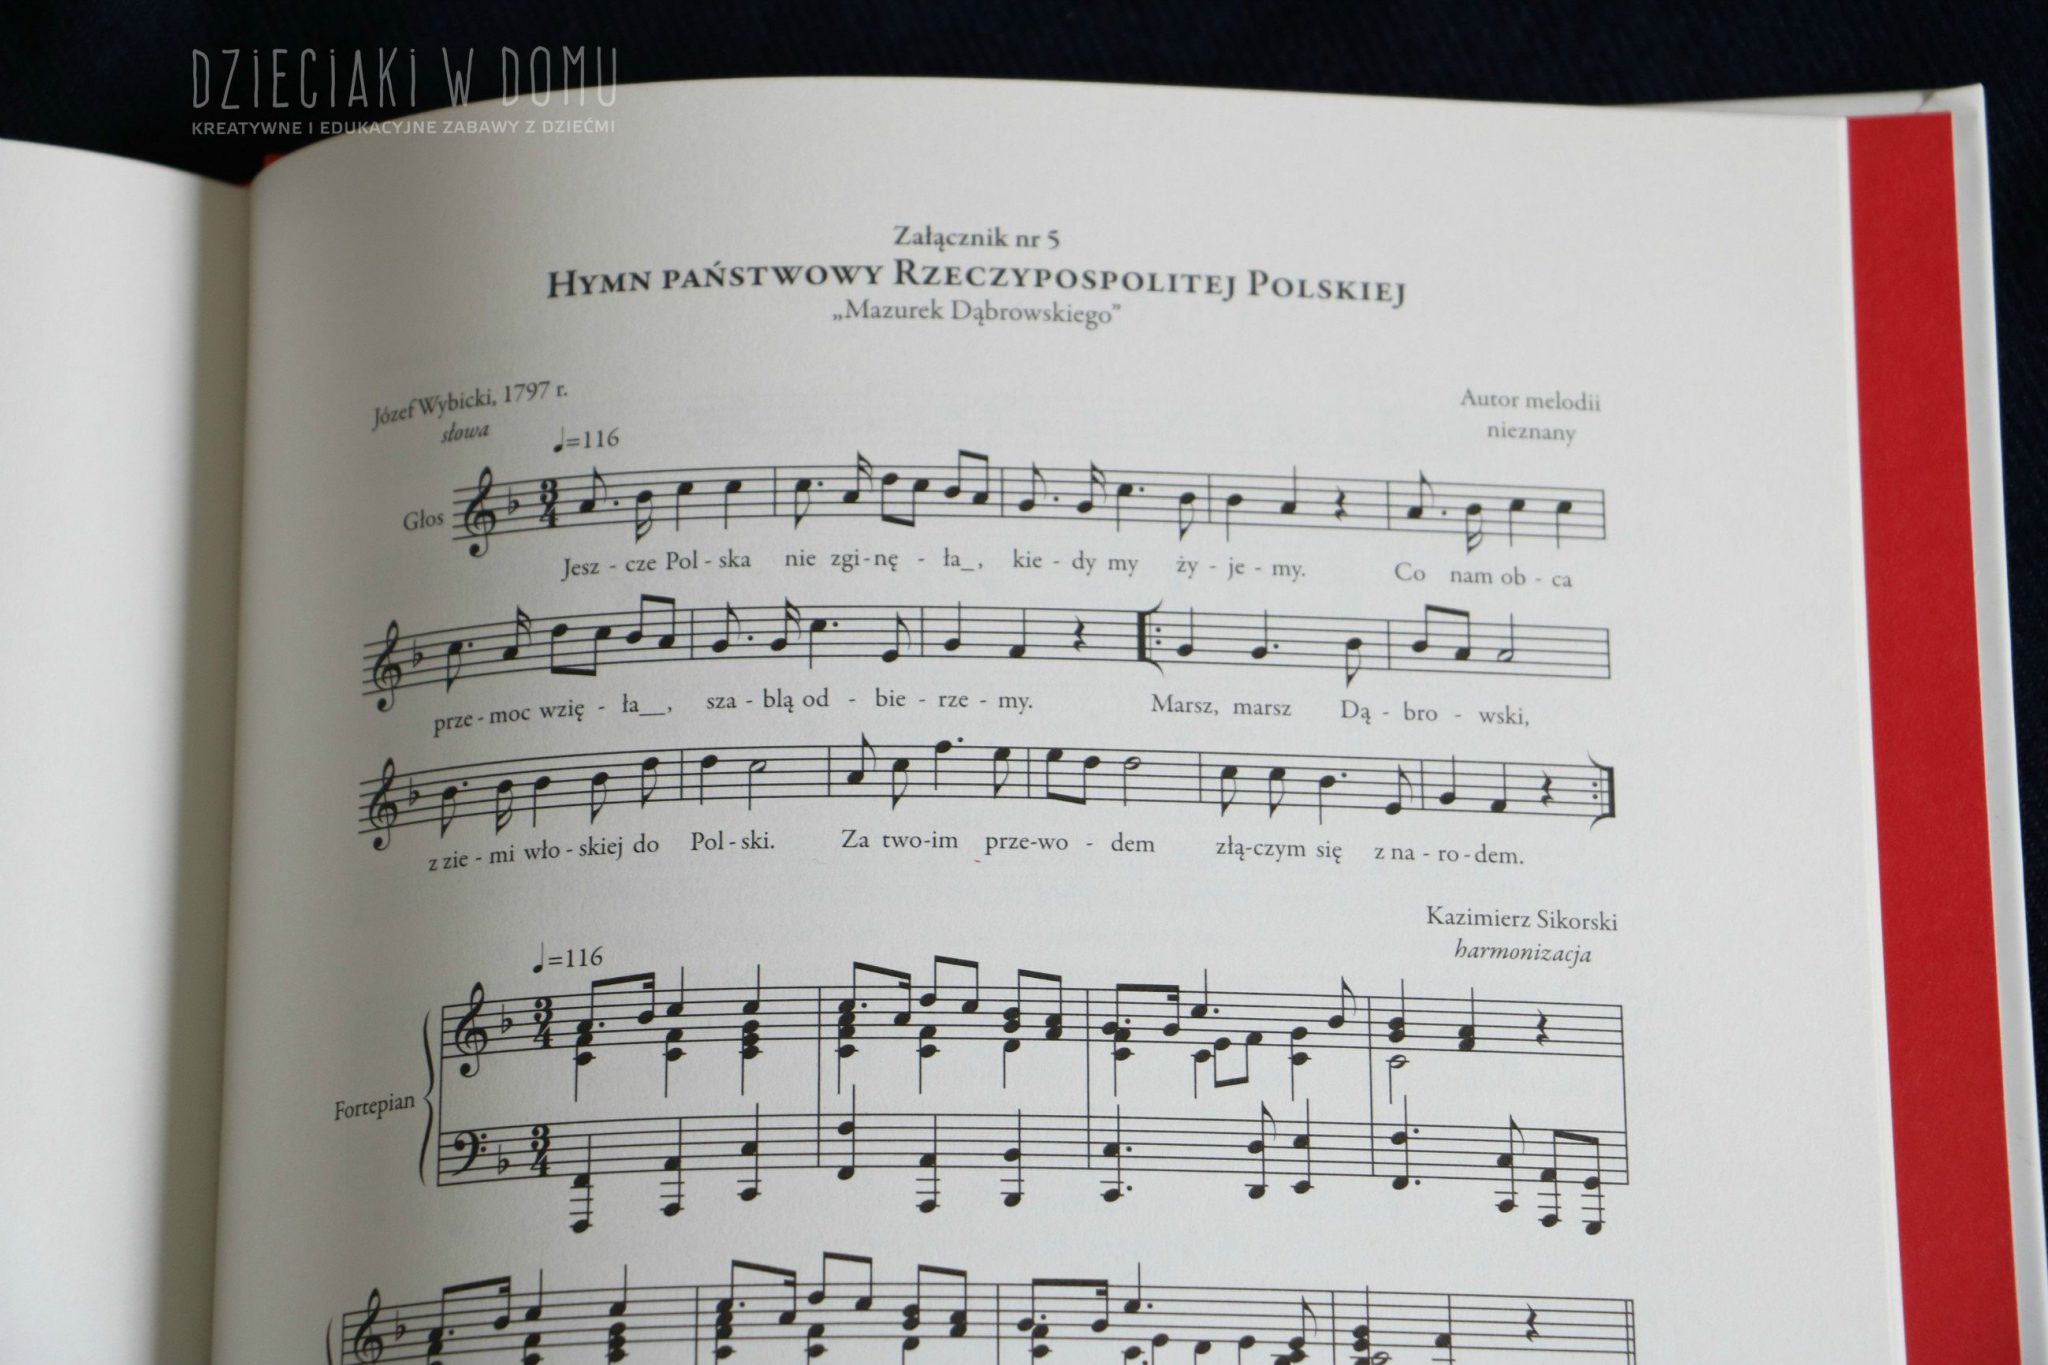 mazurek-dabrowskiego-hymn-narodowy-3